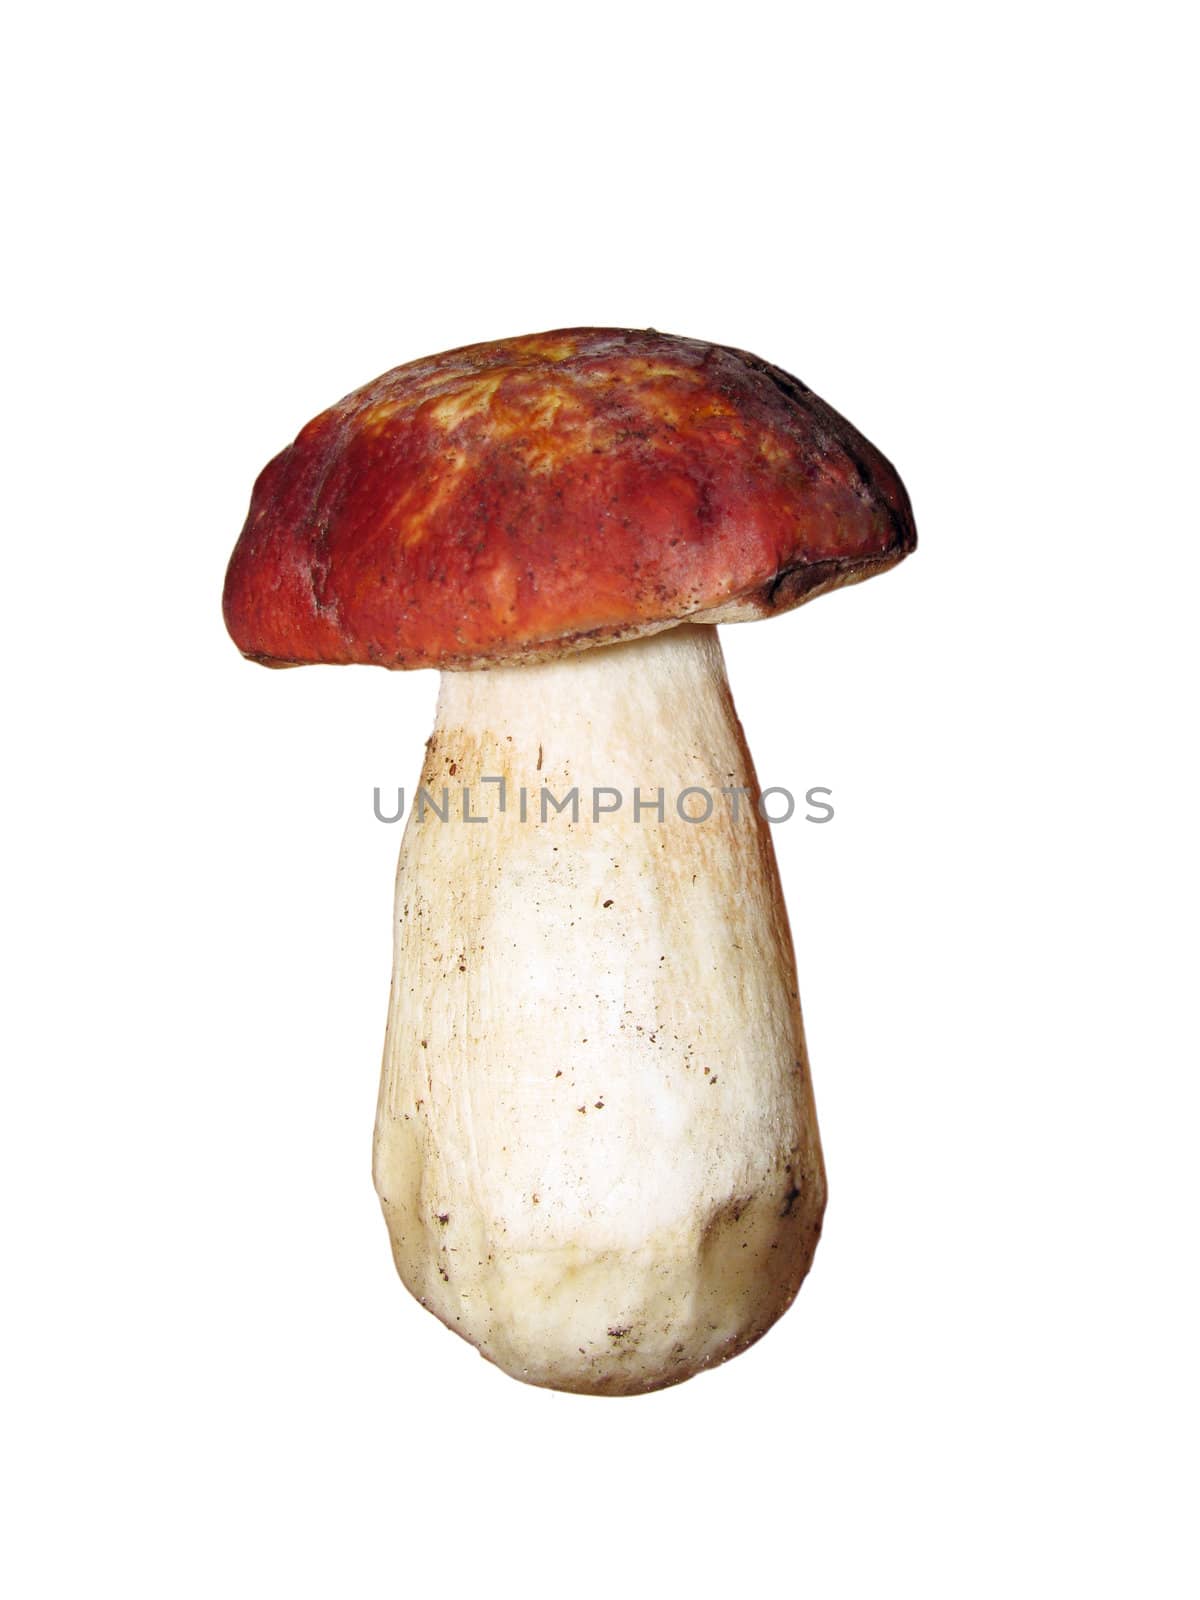 eatable mushroom isolated on white